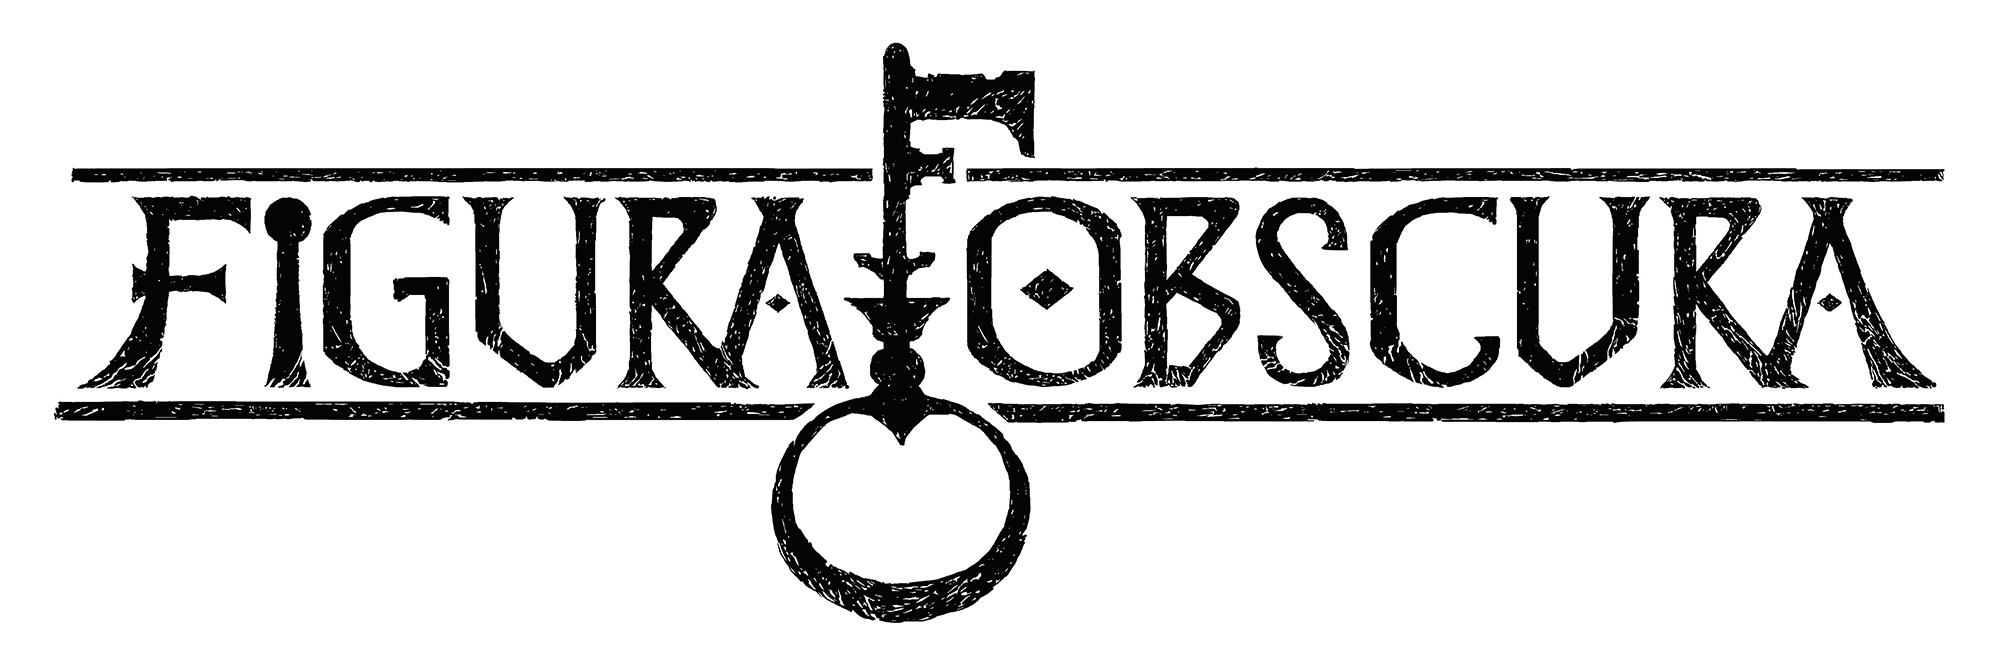 Figura Obscura logo